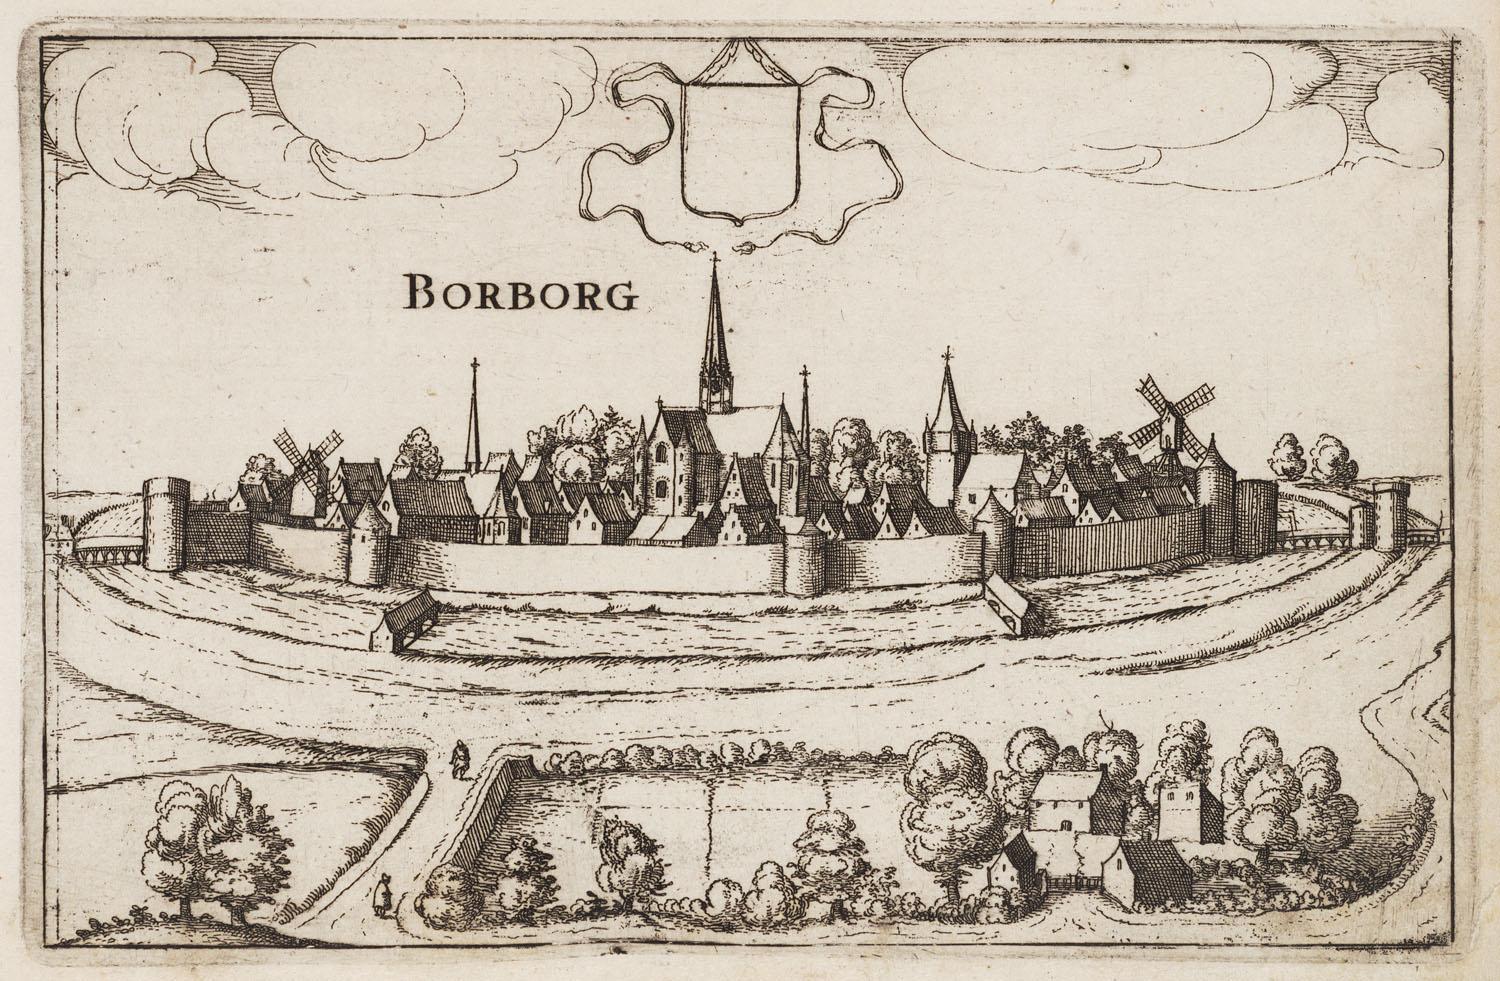 Bourbourg - La ville au 17e siècle